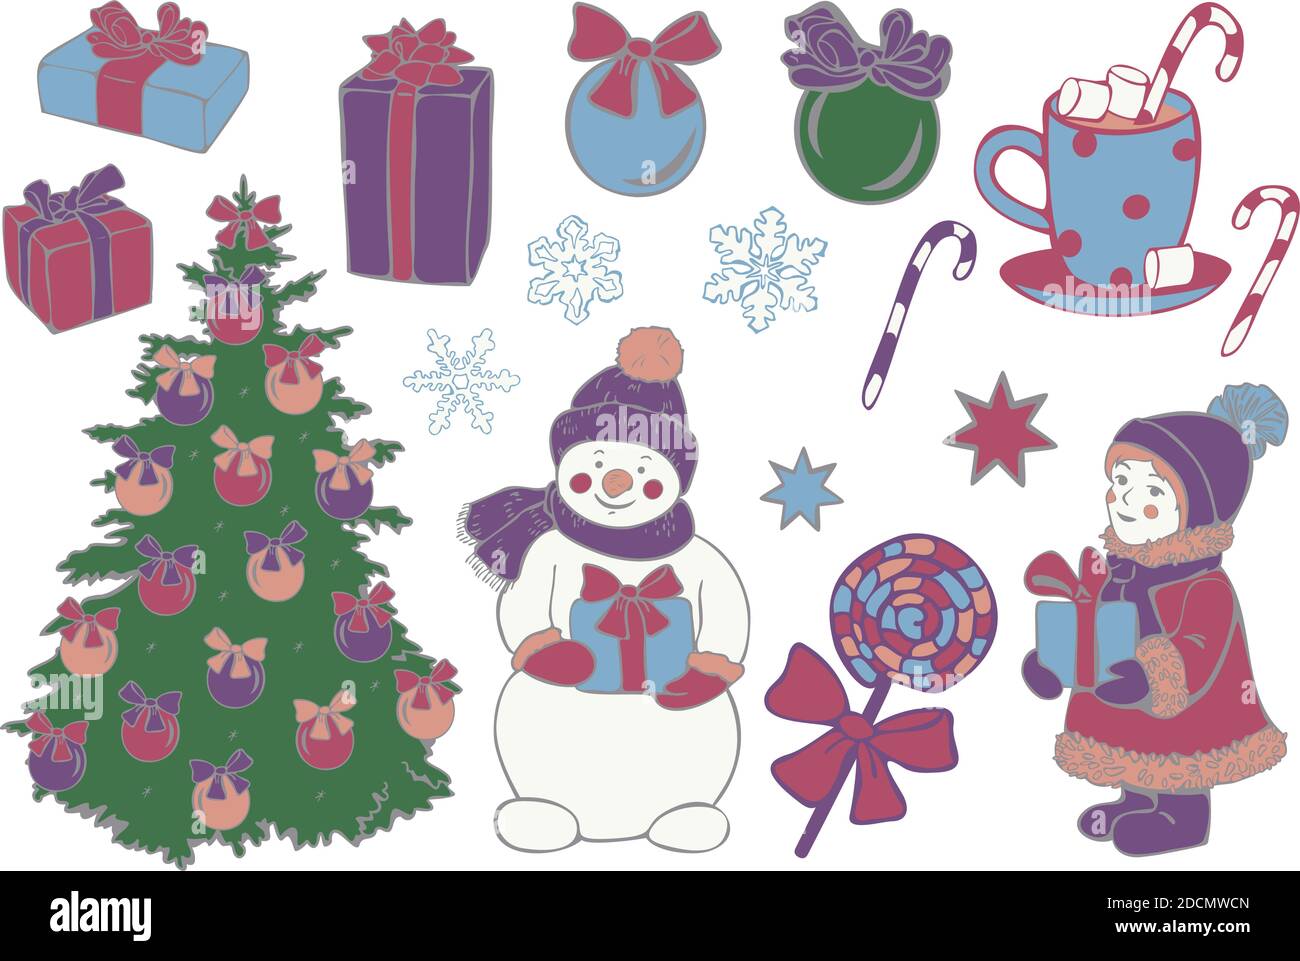 Grand ensemble de vecteurs d'objets de Noël. Boîtes-cadeaux, sapin de Noël, décorations, bonhomme de neige, chevreau, bonbons, flocons de neige et étoiles. Collection d'icônes de Noël. Illustration de Vecteur